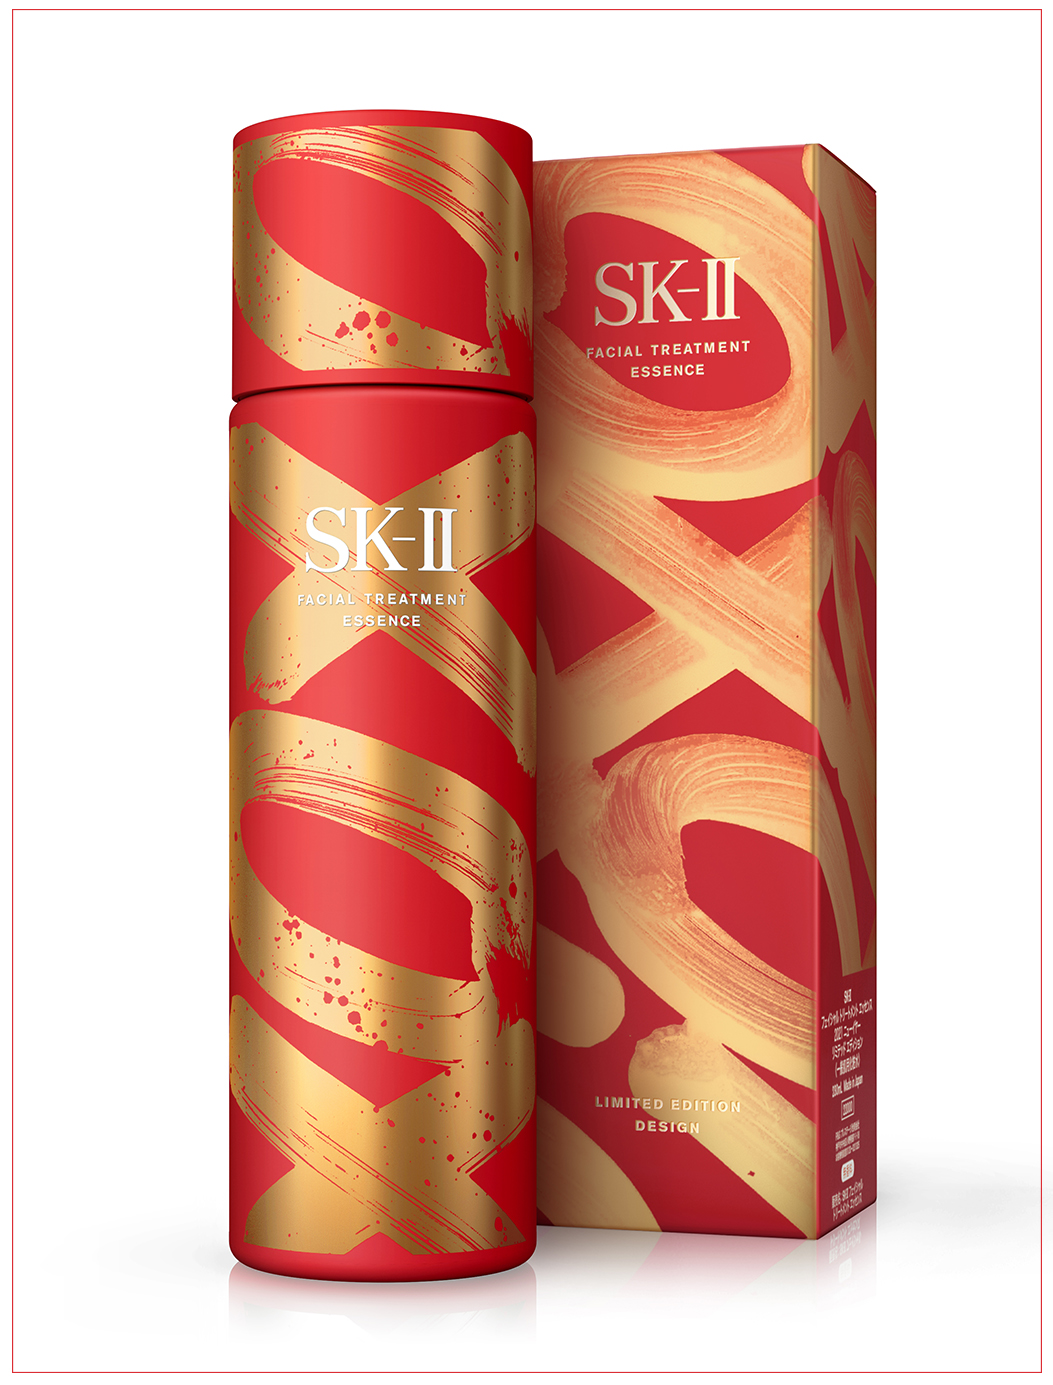 这款牛年 OXOX SK II 神奇水采用了金色涂鸦的字体，更搭配了该产品的经典红色作为瓶身底色，成为了不少粉丝的“收藏品”。